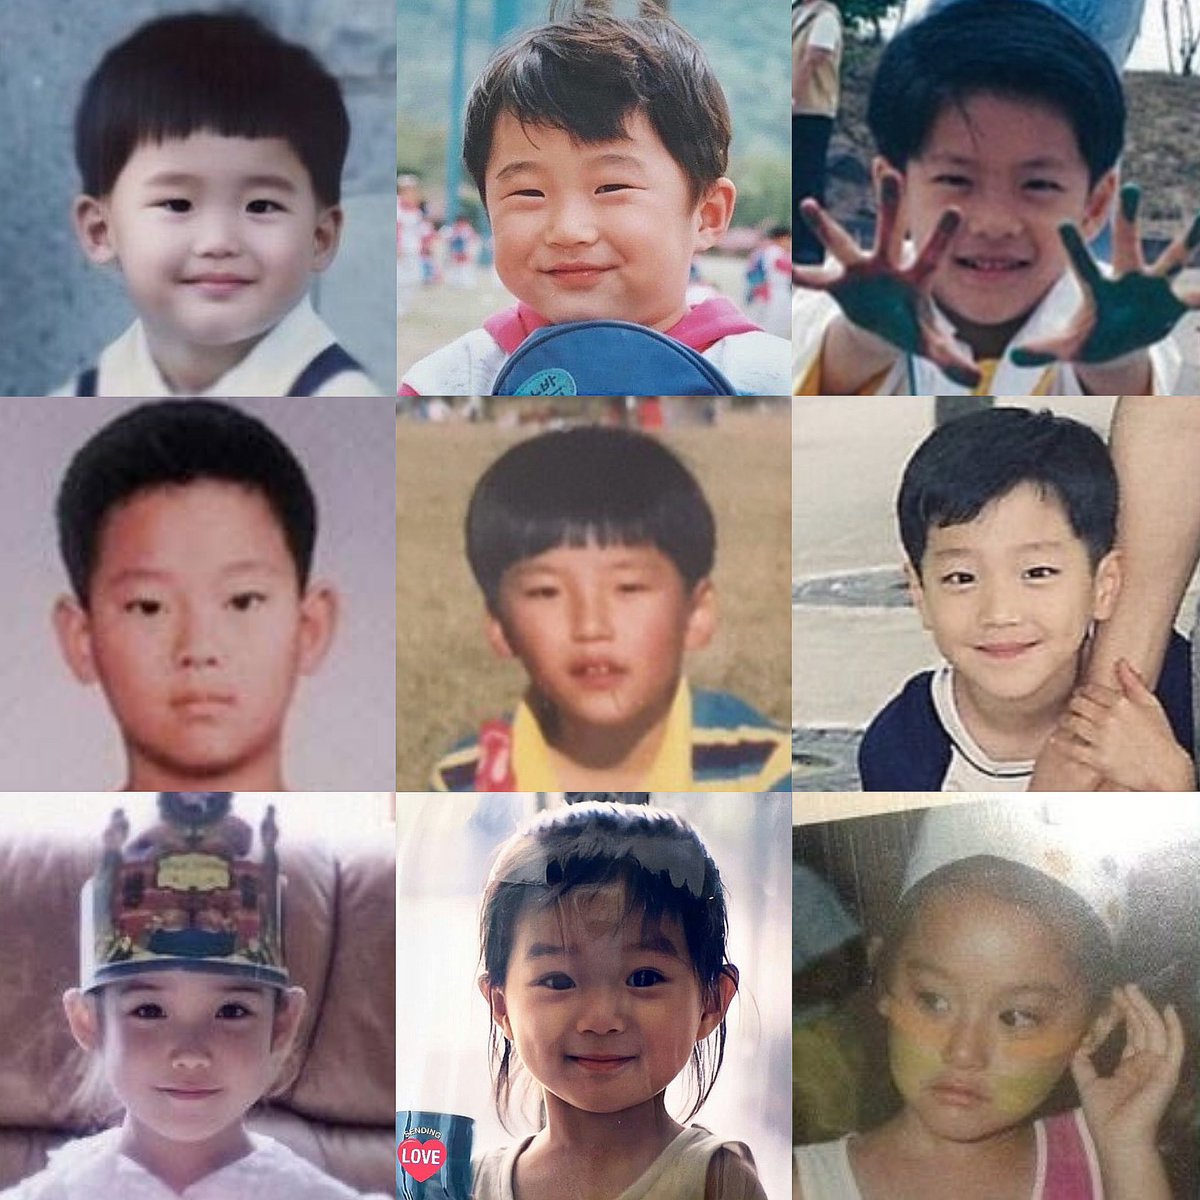 วันนี้ (5 พ.ค.) ที่เกาหลีใต้เป็นวันเด็กแห่งชาติ ขอรวมรูปมาให้ทายเล่น ๆ ว่า 9 รูปนี้คือใครบ้าง

(คำตอบอยู่ในคอมเมนต์จ้ะ)

👧🏻👦🏻👧🏻👦🏻